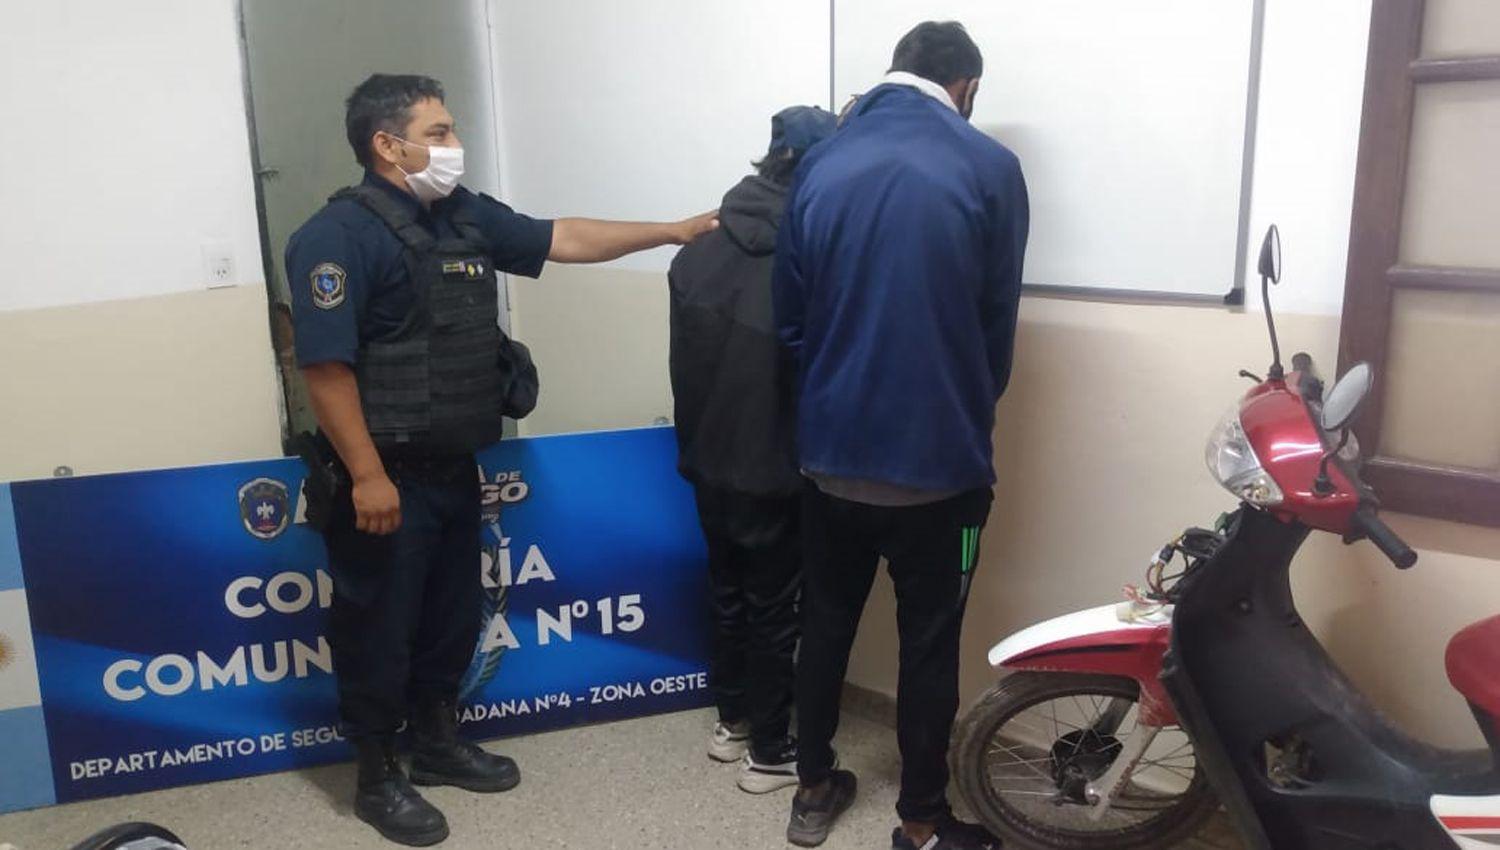 Luego de robar una moto intentaron huir en colectivo pero fueron detenidos